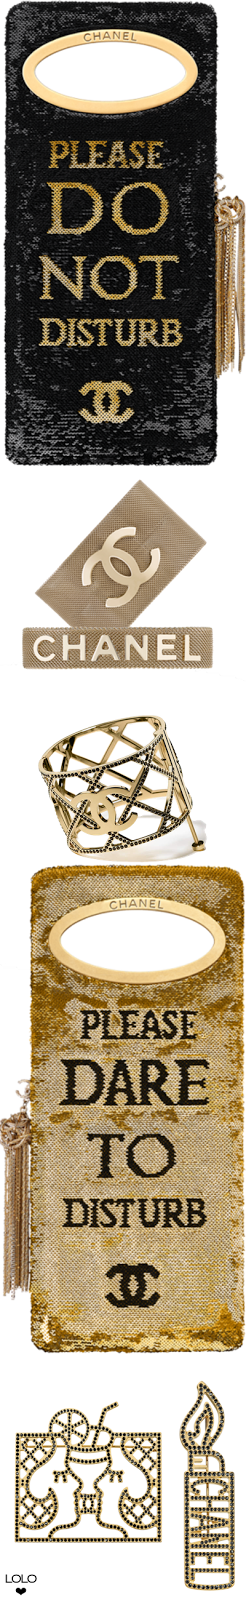 Chanel Métiers d'Art 2016/17 Paris Cosmopolite